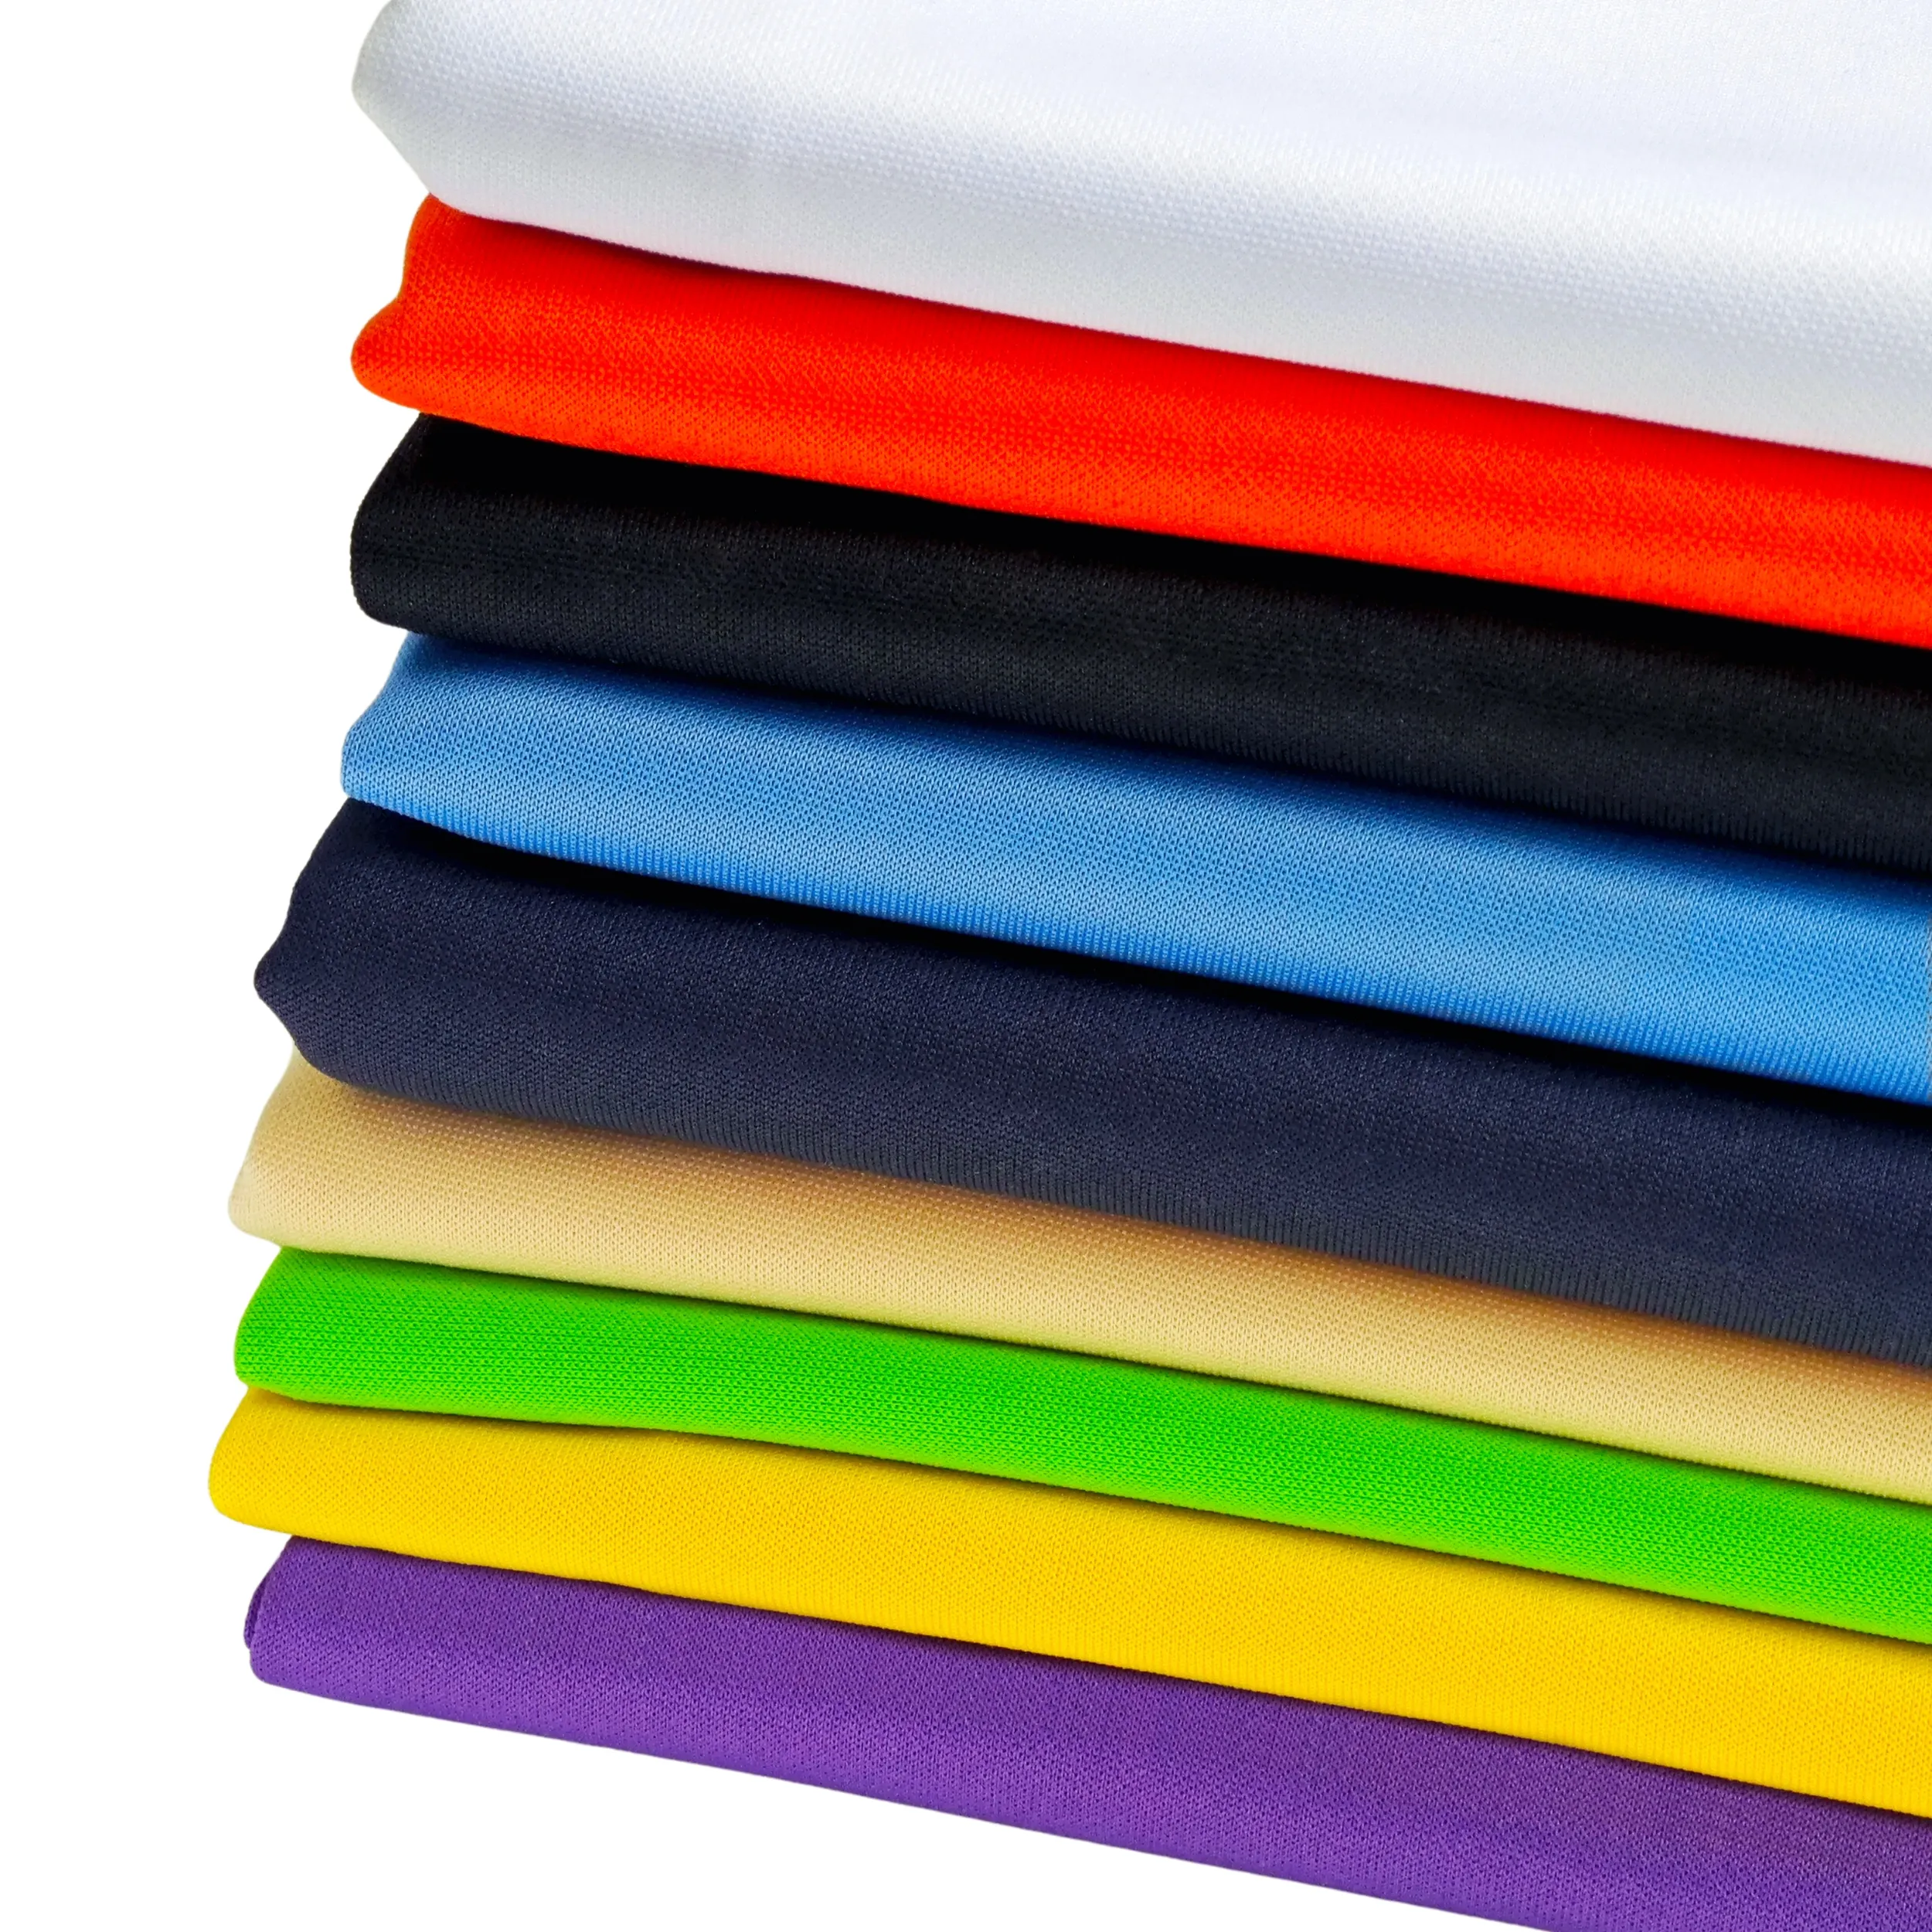 Hochwertiger anti-falten nicht elastischer 100% Polyester gestrickt ineinandergreifender Tauchstoff für Damen-Top Trainingsanzug